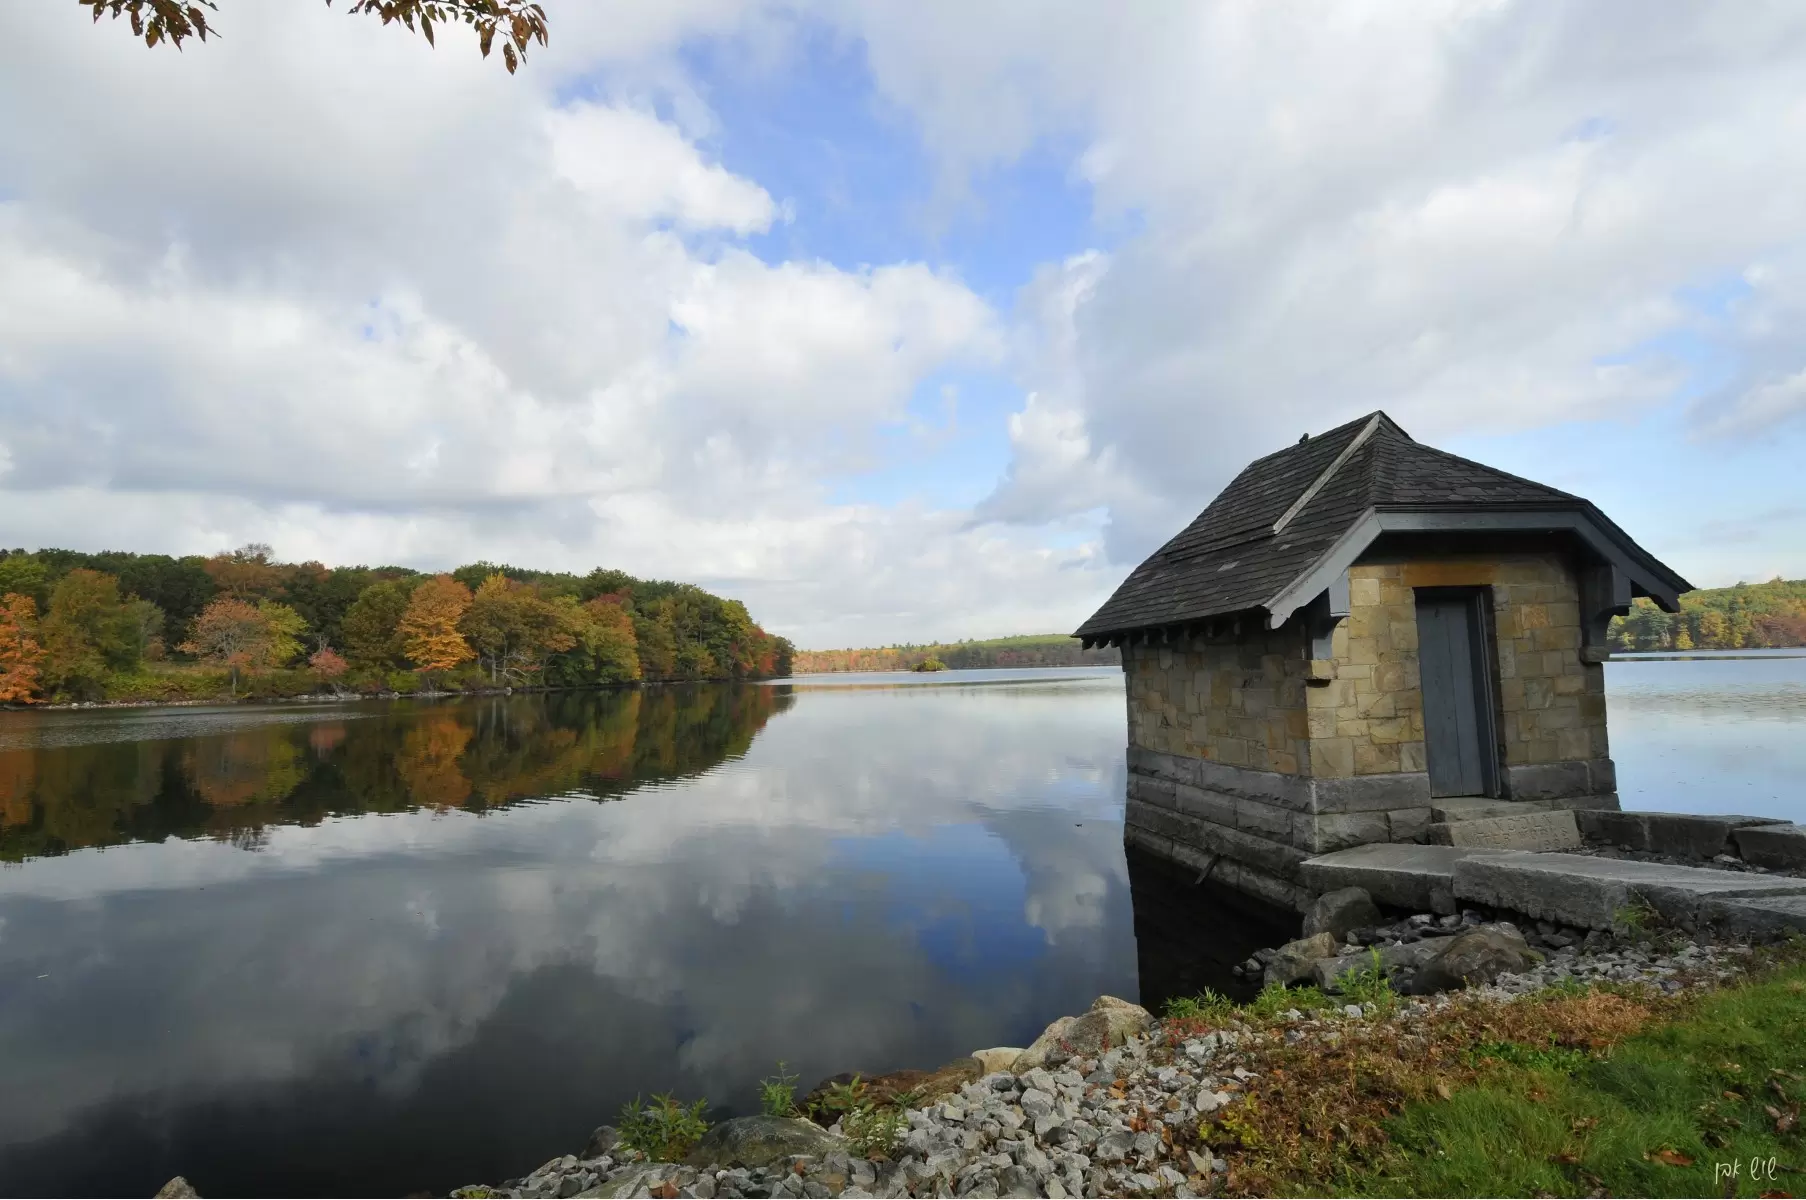 הבית על האגם - שוש אבן - תמונות לסלון כפרי  - מק''ט: 130000